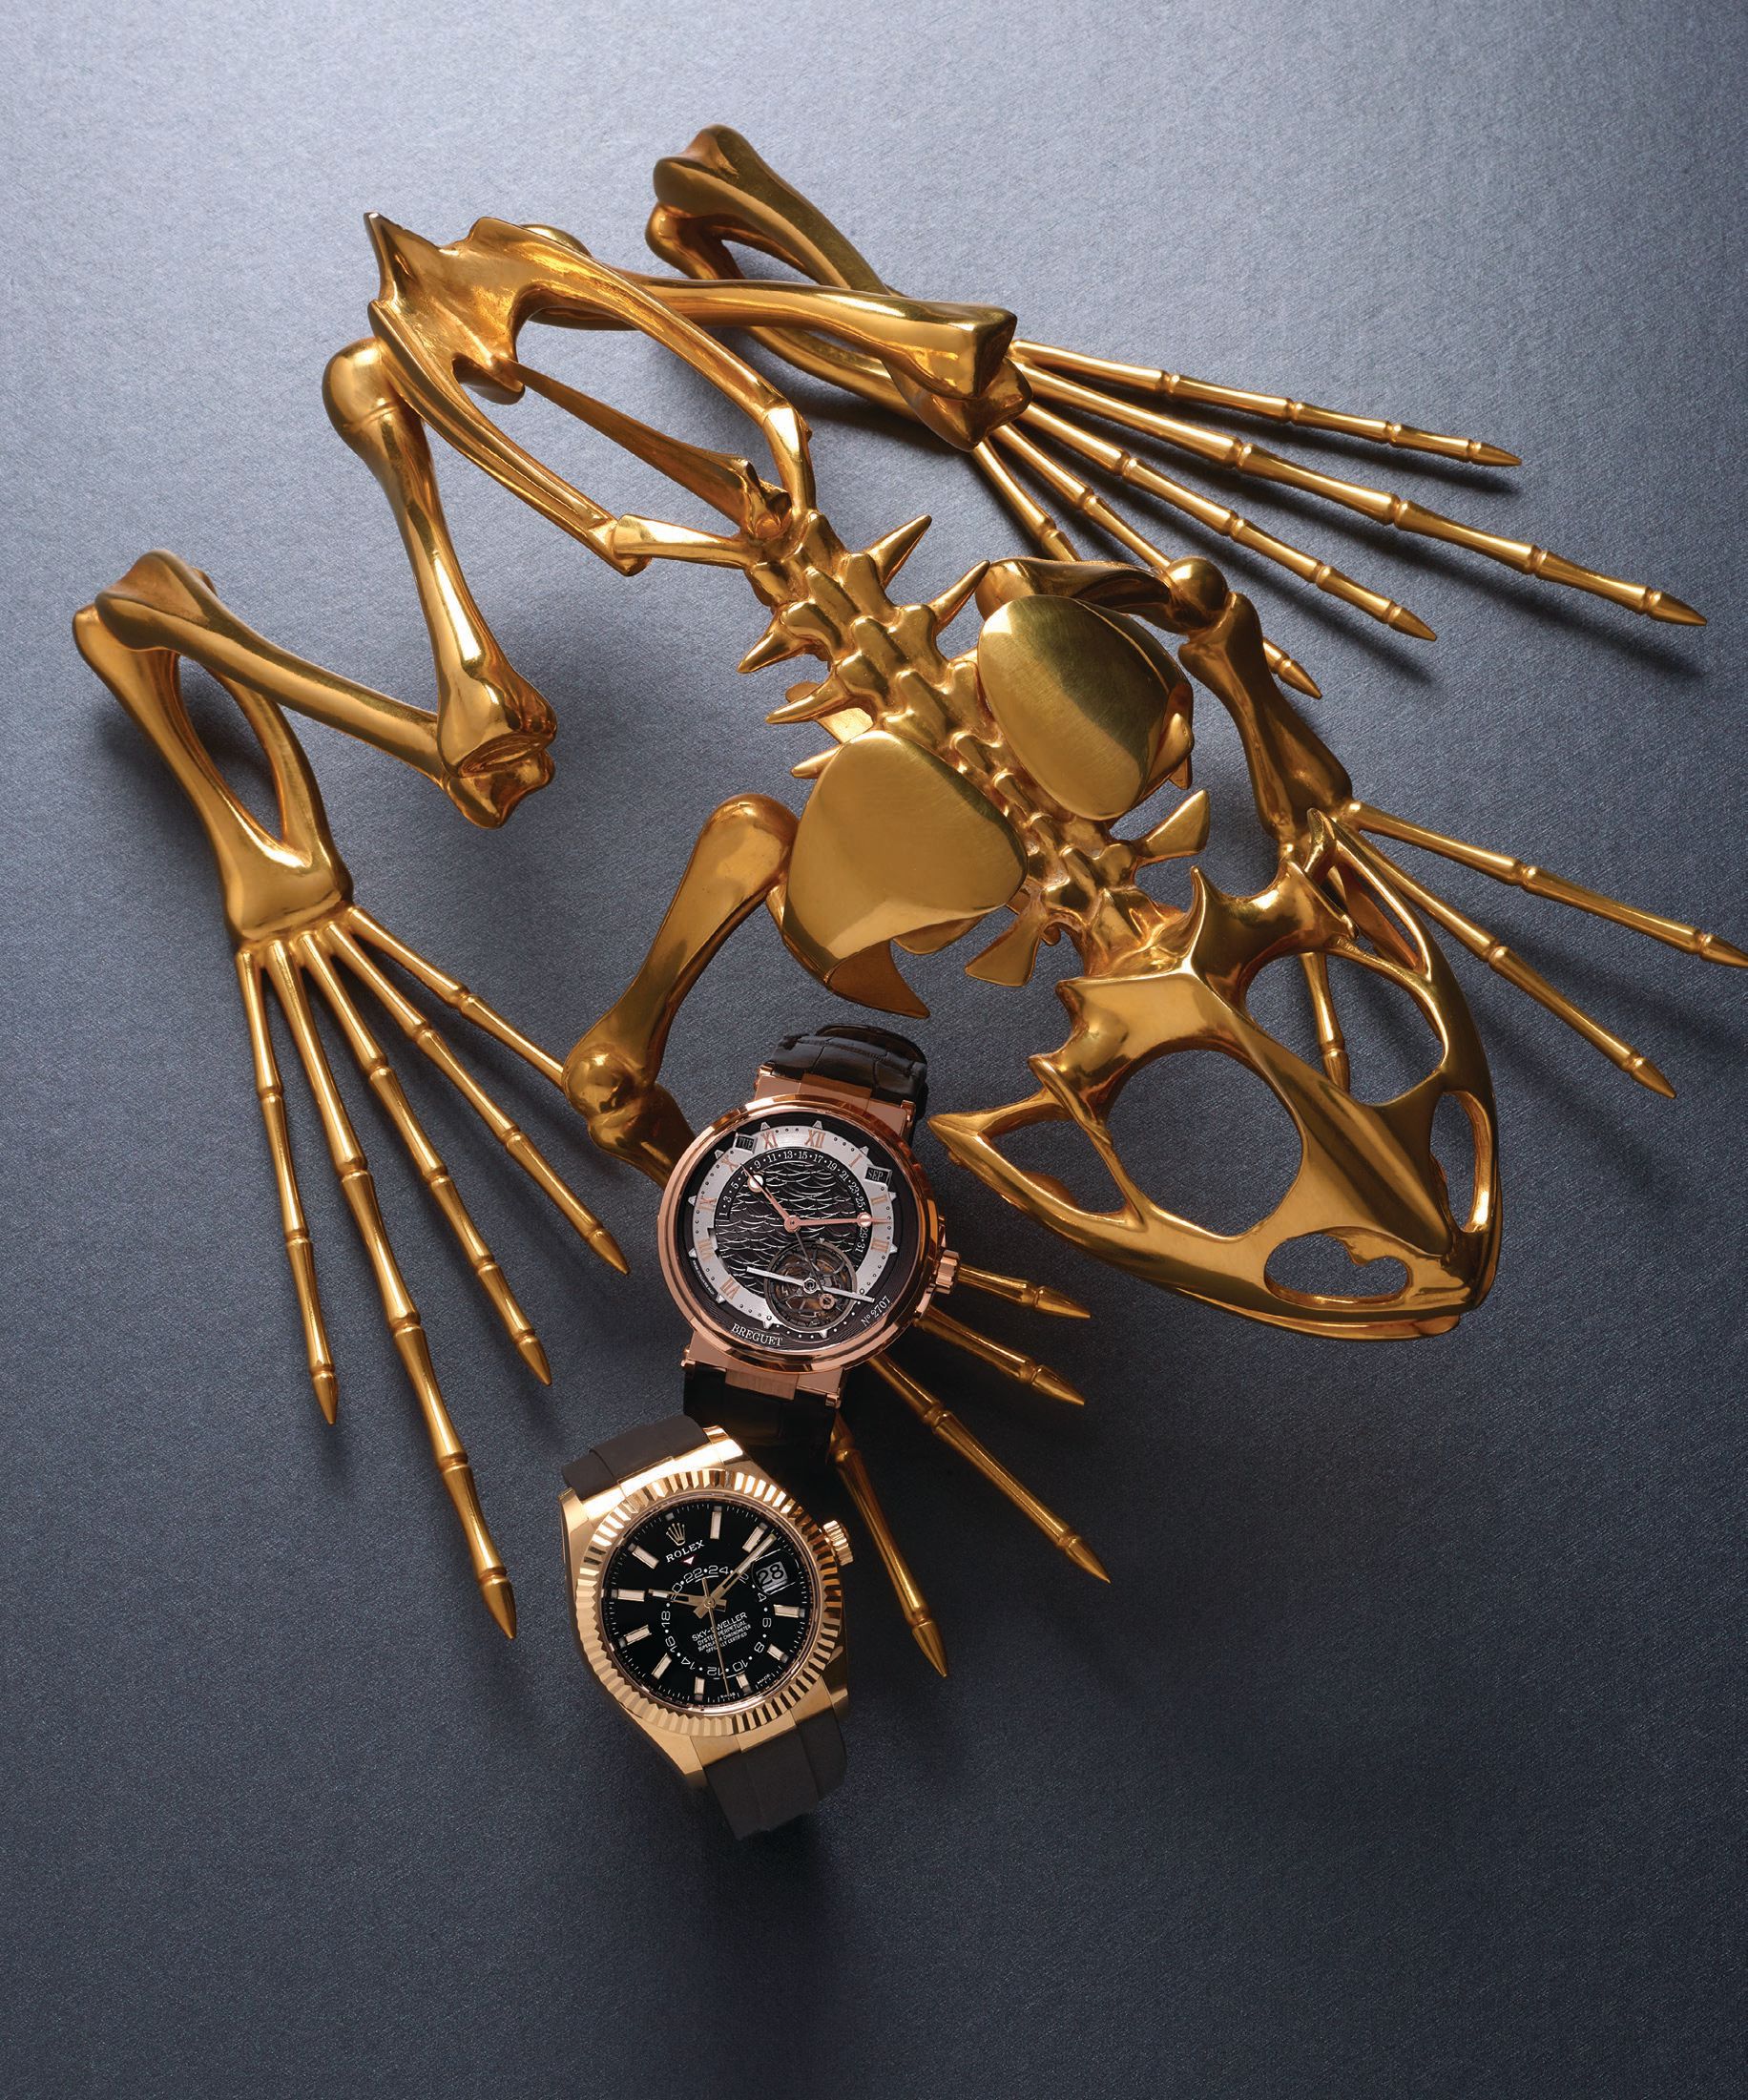 From top: Breguet Marine Equation Marchante 5887 timepiece, breguet.com; Rolex Sky-Dweller 42 mm timepiece in yellow gold, rolex.com.